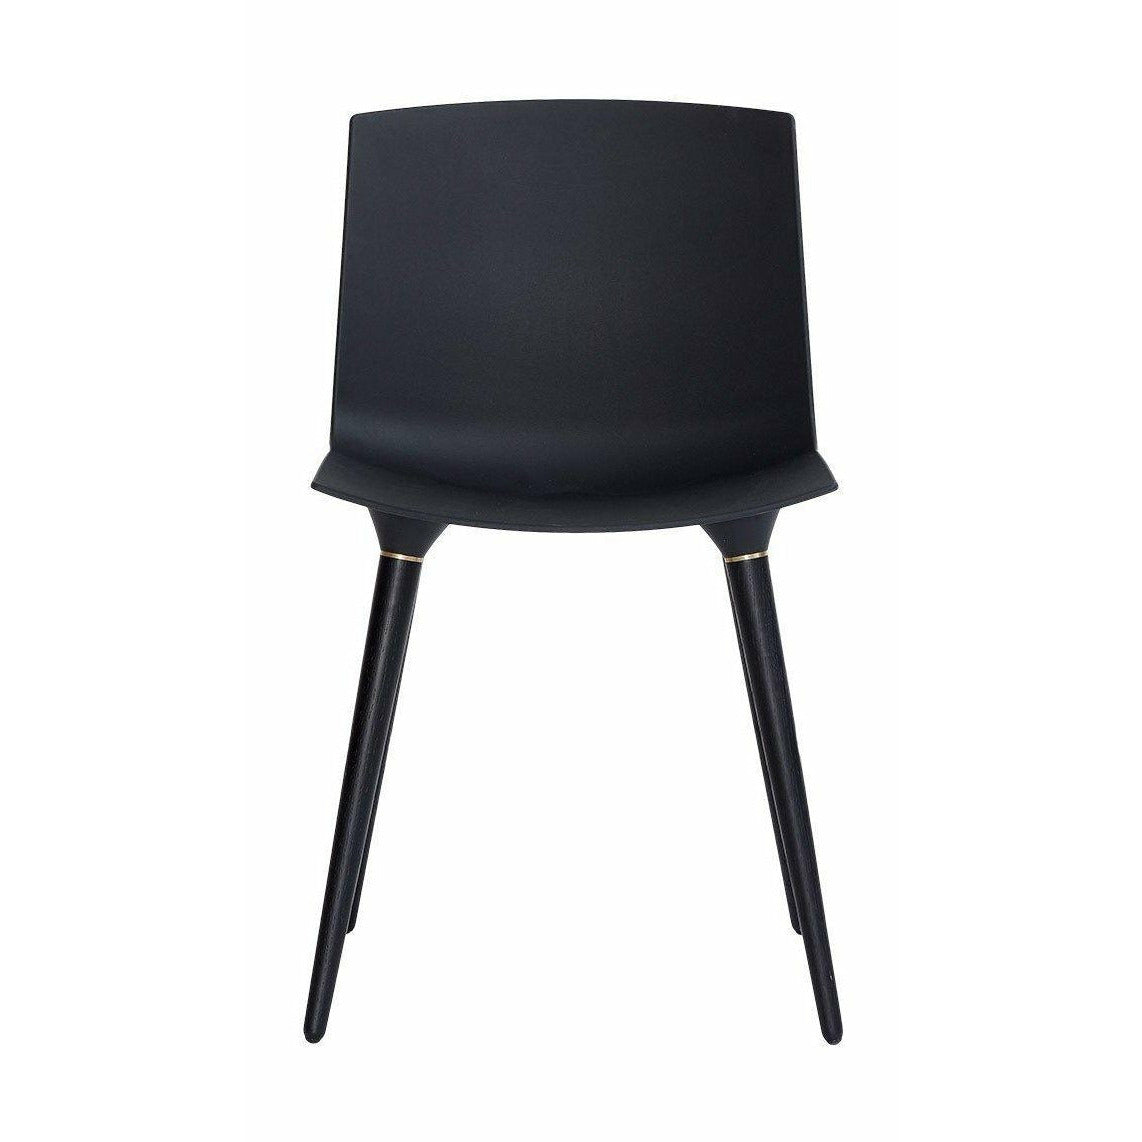 Andersen Furniture Tac Stuhl Eiche schwarz lackiert, Sitz Kunststoff schwarz